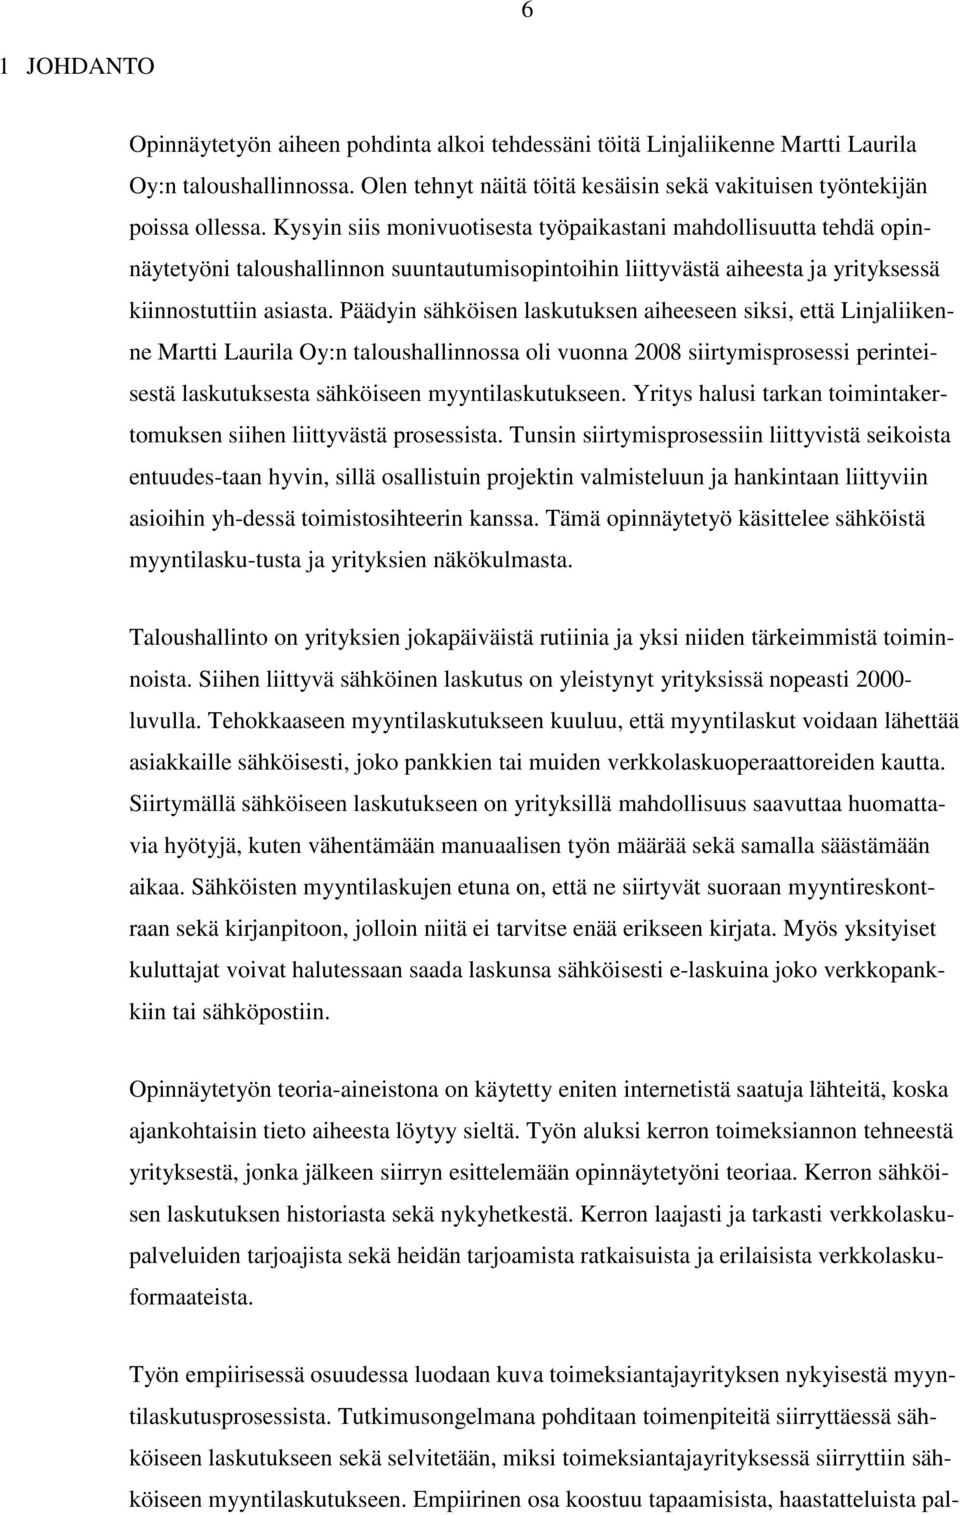 Päädyin sähköisen laskutuksen aiheeseen siksi, että Linjaliikenne Martti Laurila Oy:n taloushallinnossa oli vuonna 2008 siirtymisprosessi perinteisestä laskutuksesta sähköiseen myyntilaskutukseen.